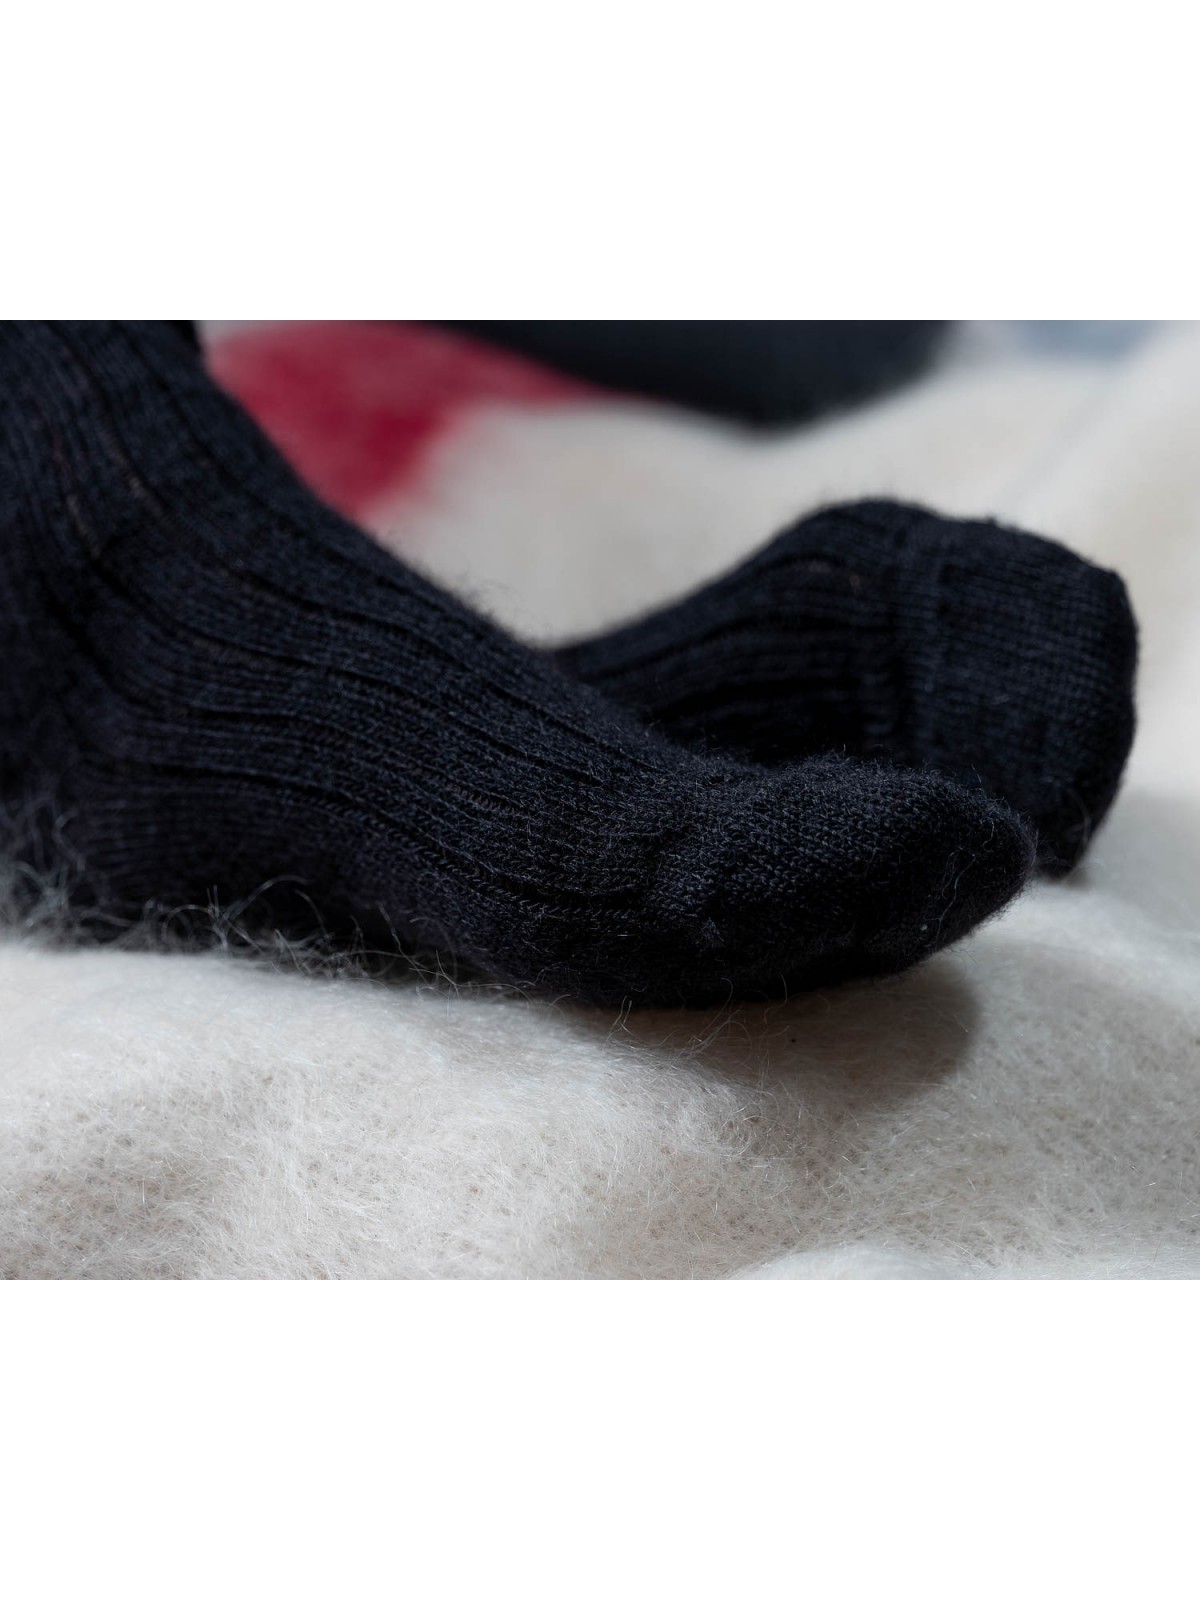 Chaussettes chaudes : la clé d'un hiver bien au chaud